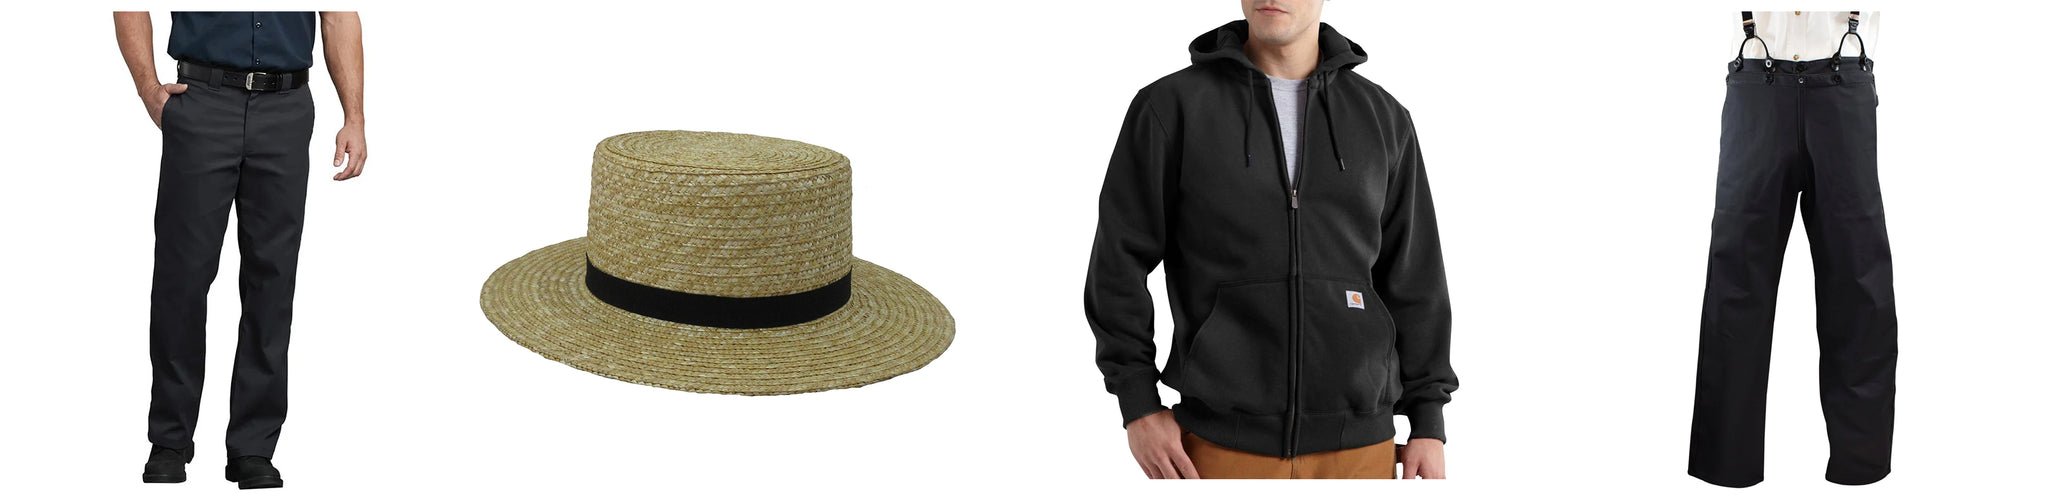 men's pants, hat, hoodie